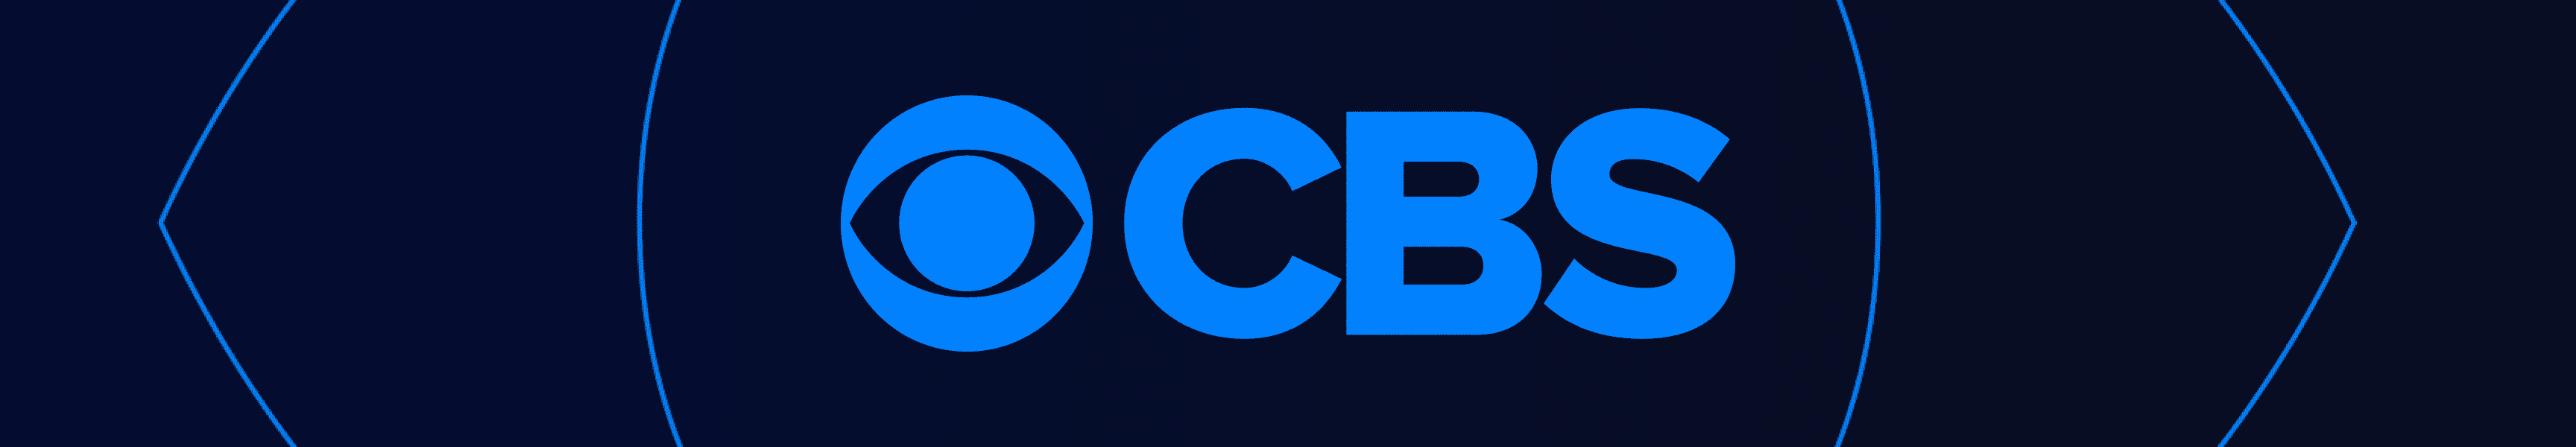 CBS Unterhaltung Glaswaren